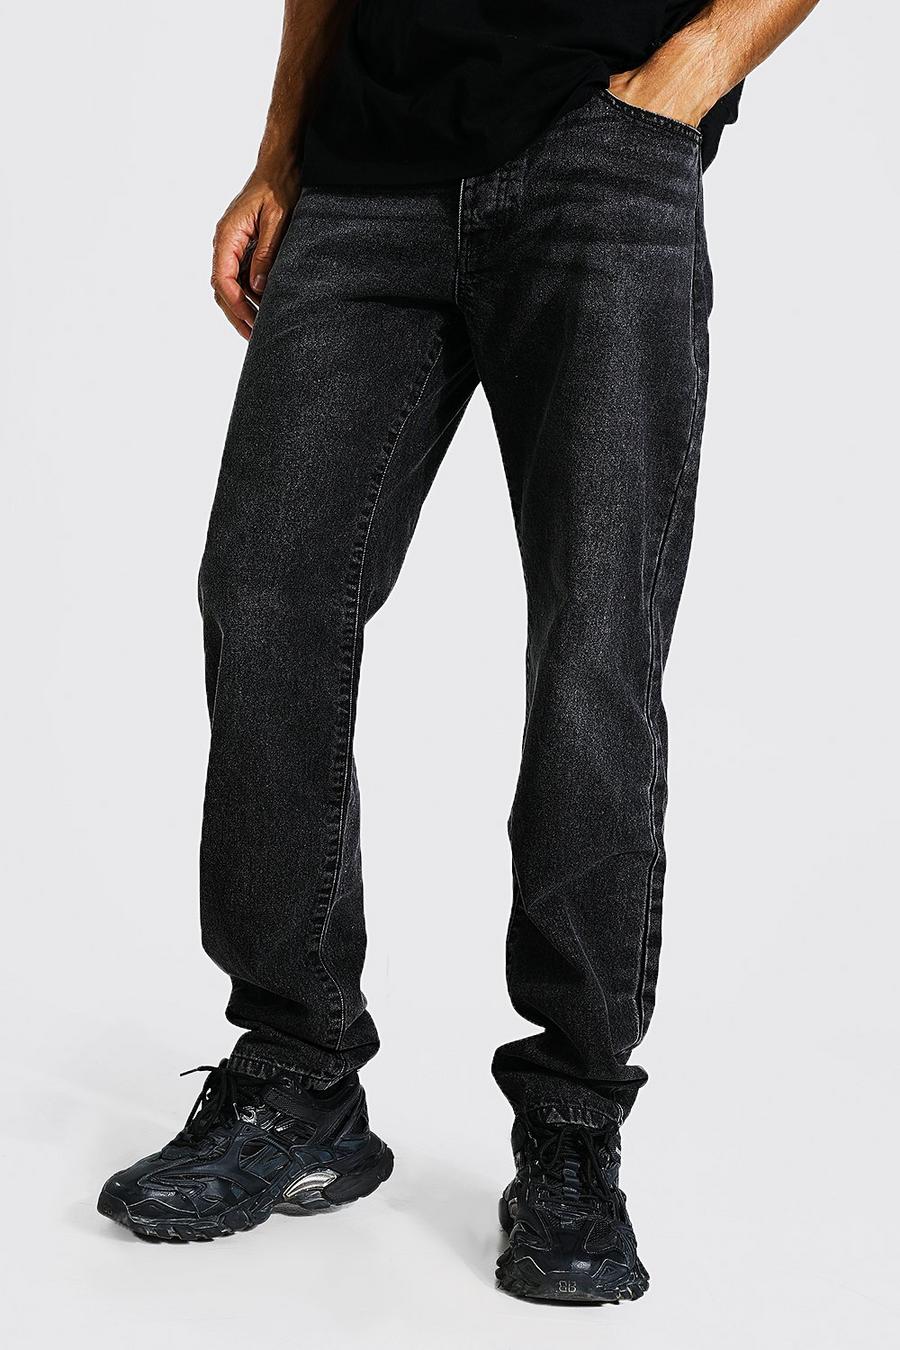 Jeans Tall rilassati con cotone riciclato, Charcoal grey